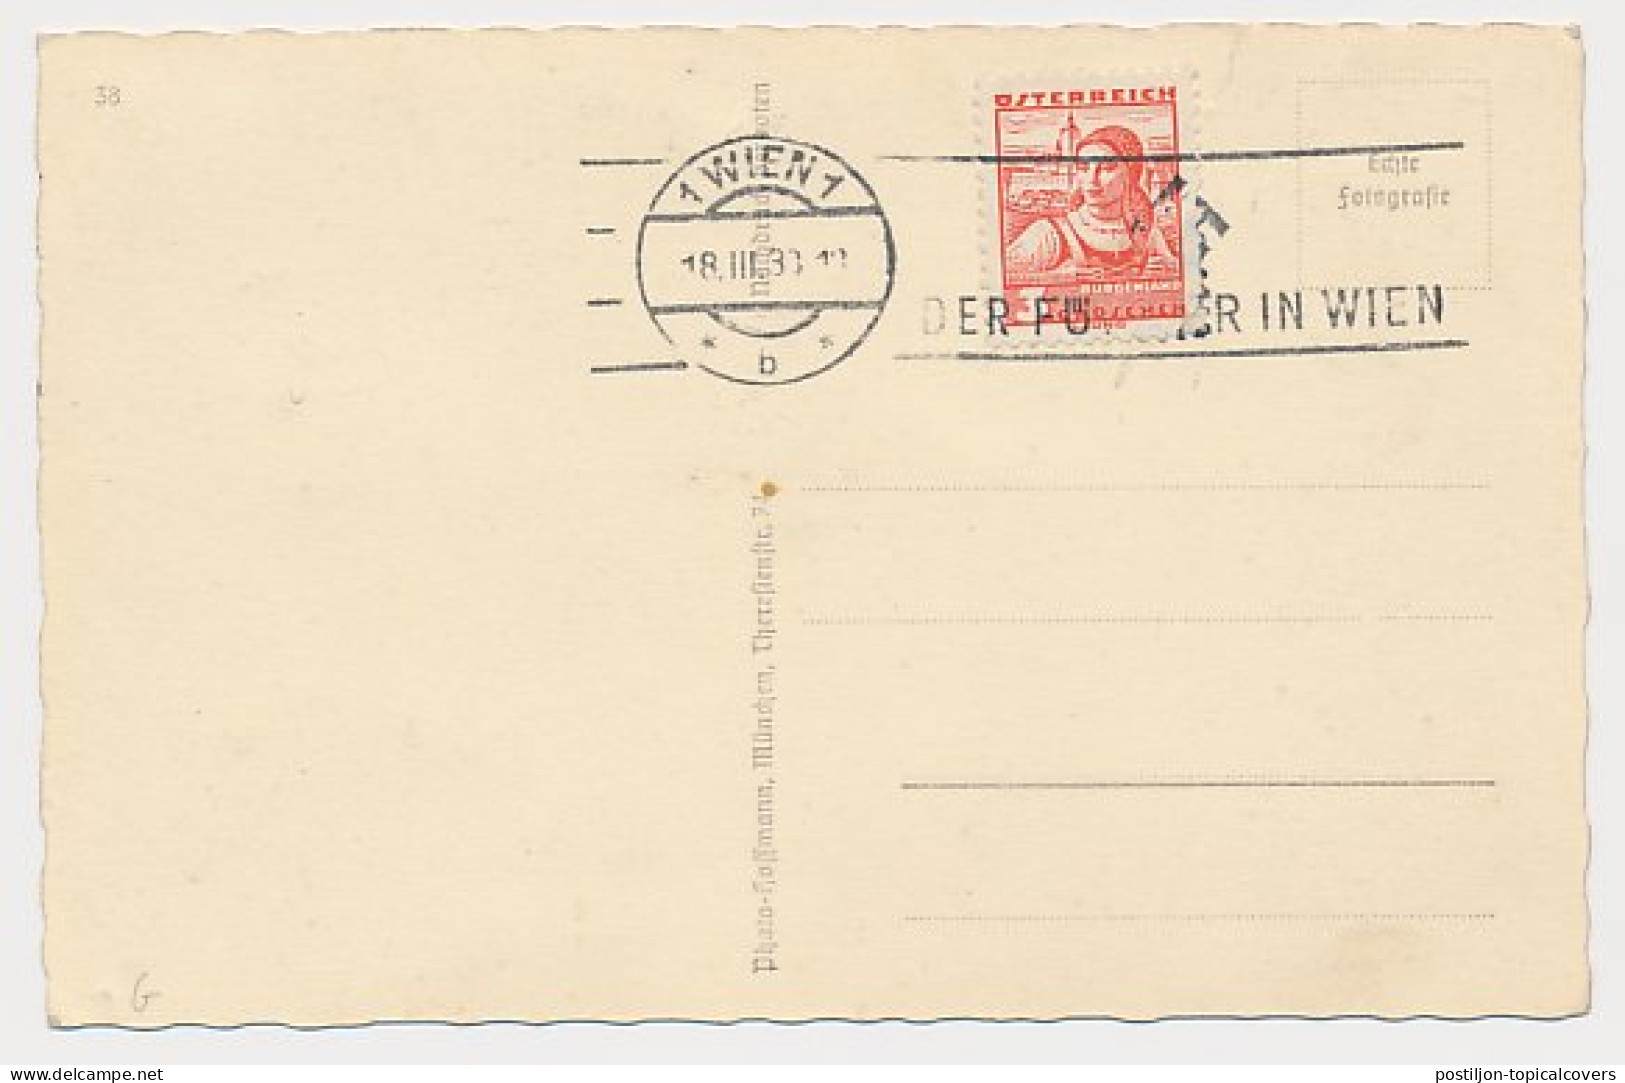 Postcard / Postmark Deutsches Reich / Germany / Austria 1938 Adolf Hitler - WW2